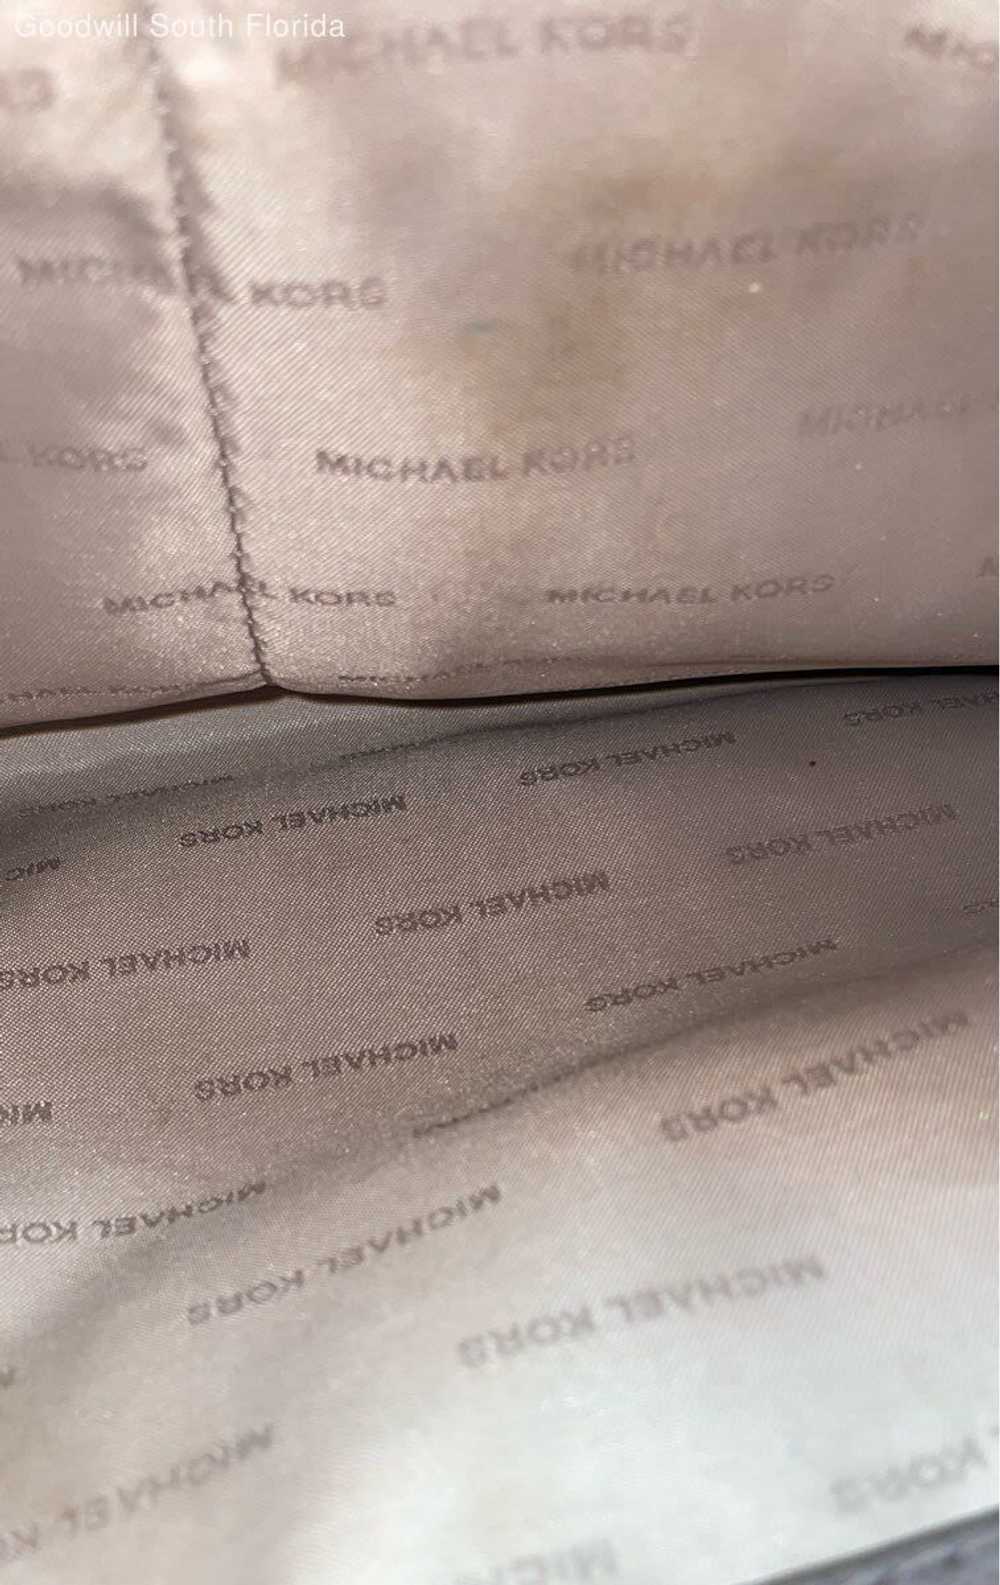 Michael Kors Womens Gray Handbag - image 5